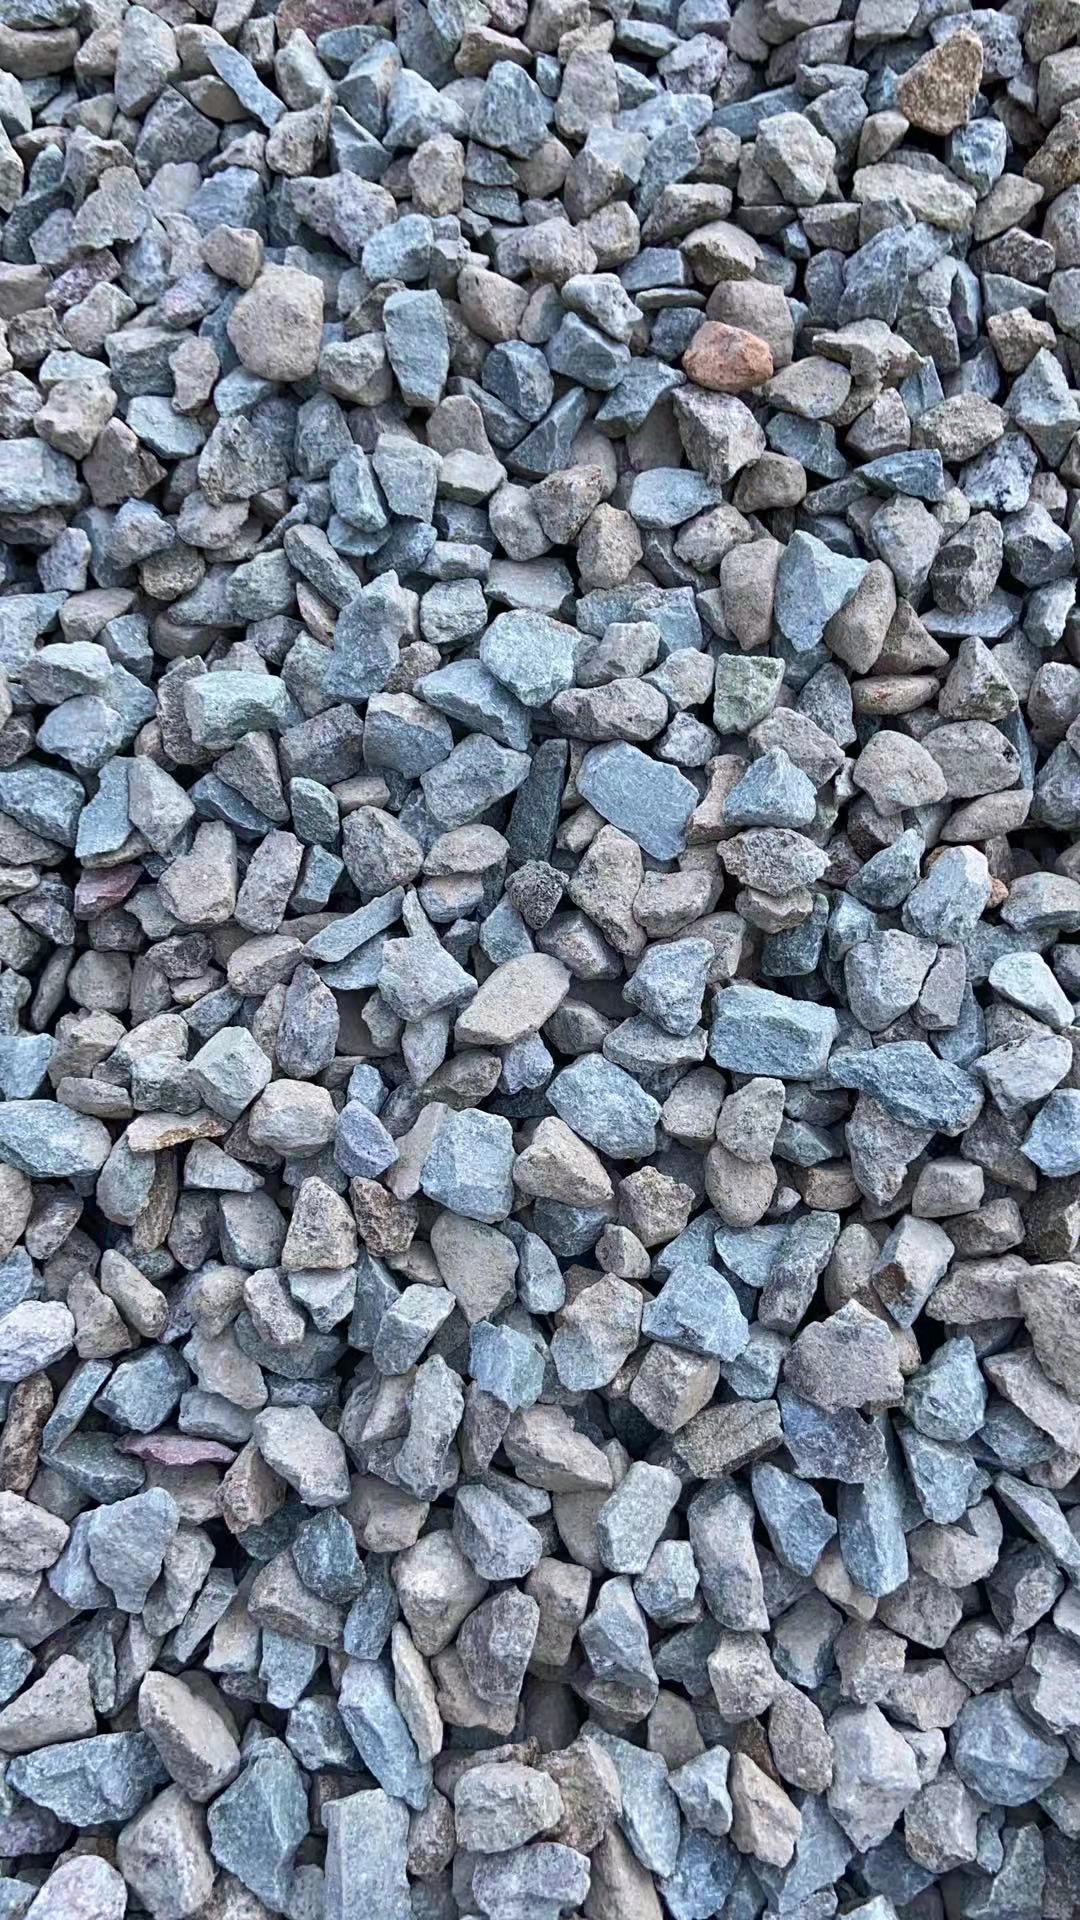 漳州砂石碎石图片,市场砂石加工厂家